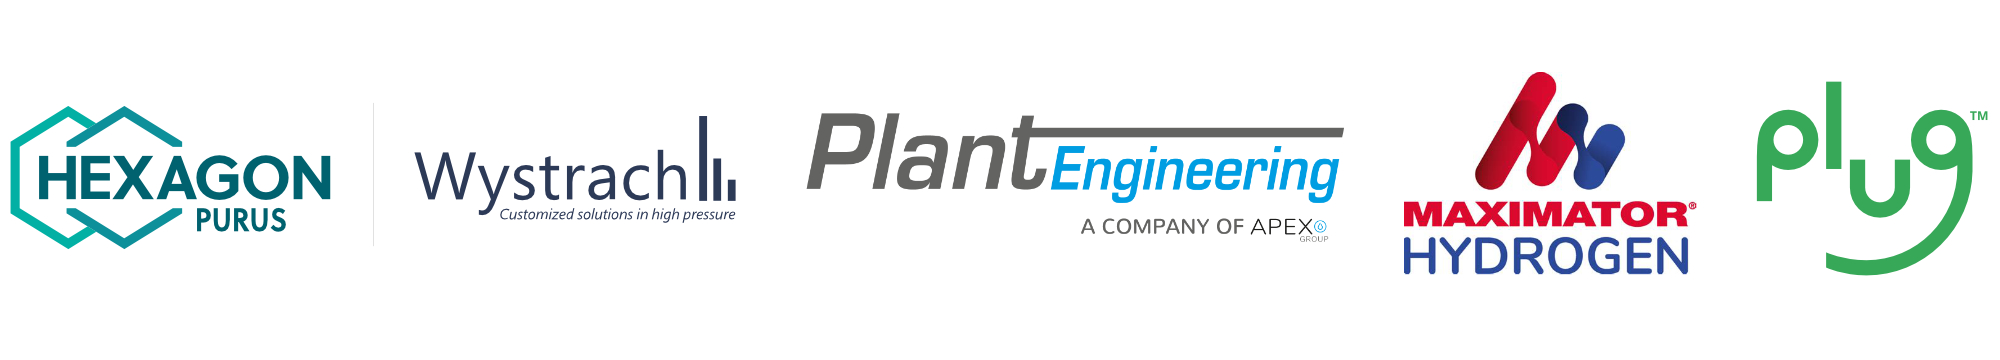 Logos Wystach, Plant, Maimator, Plug